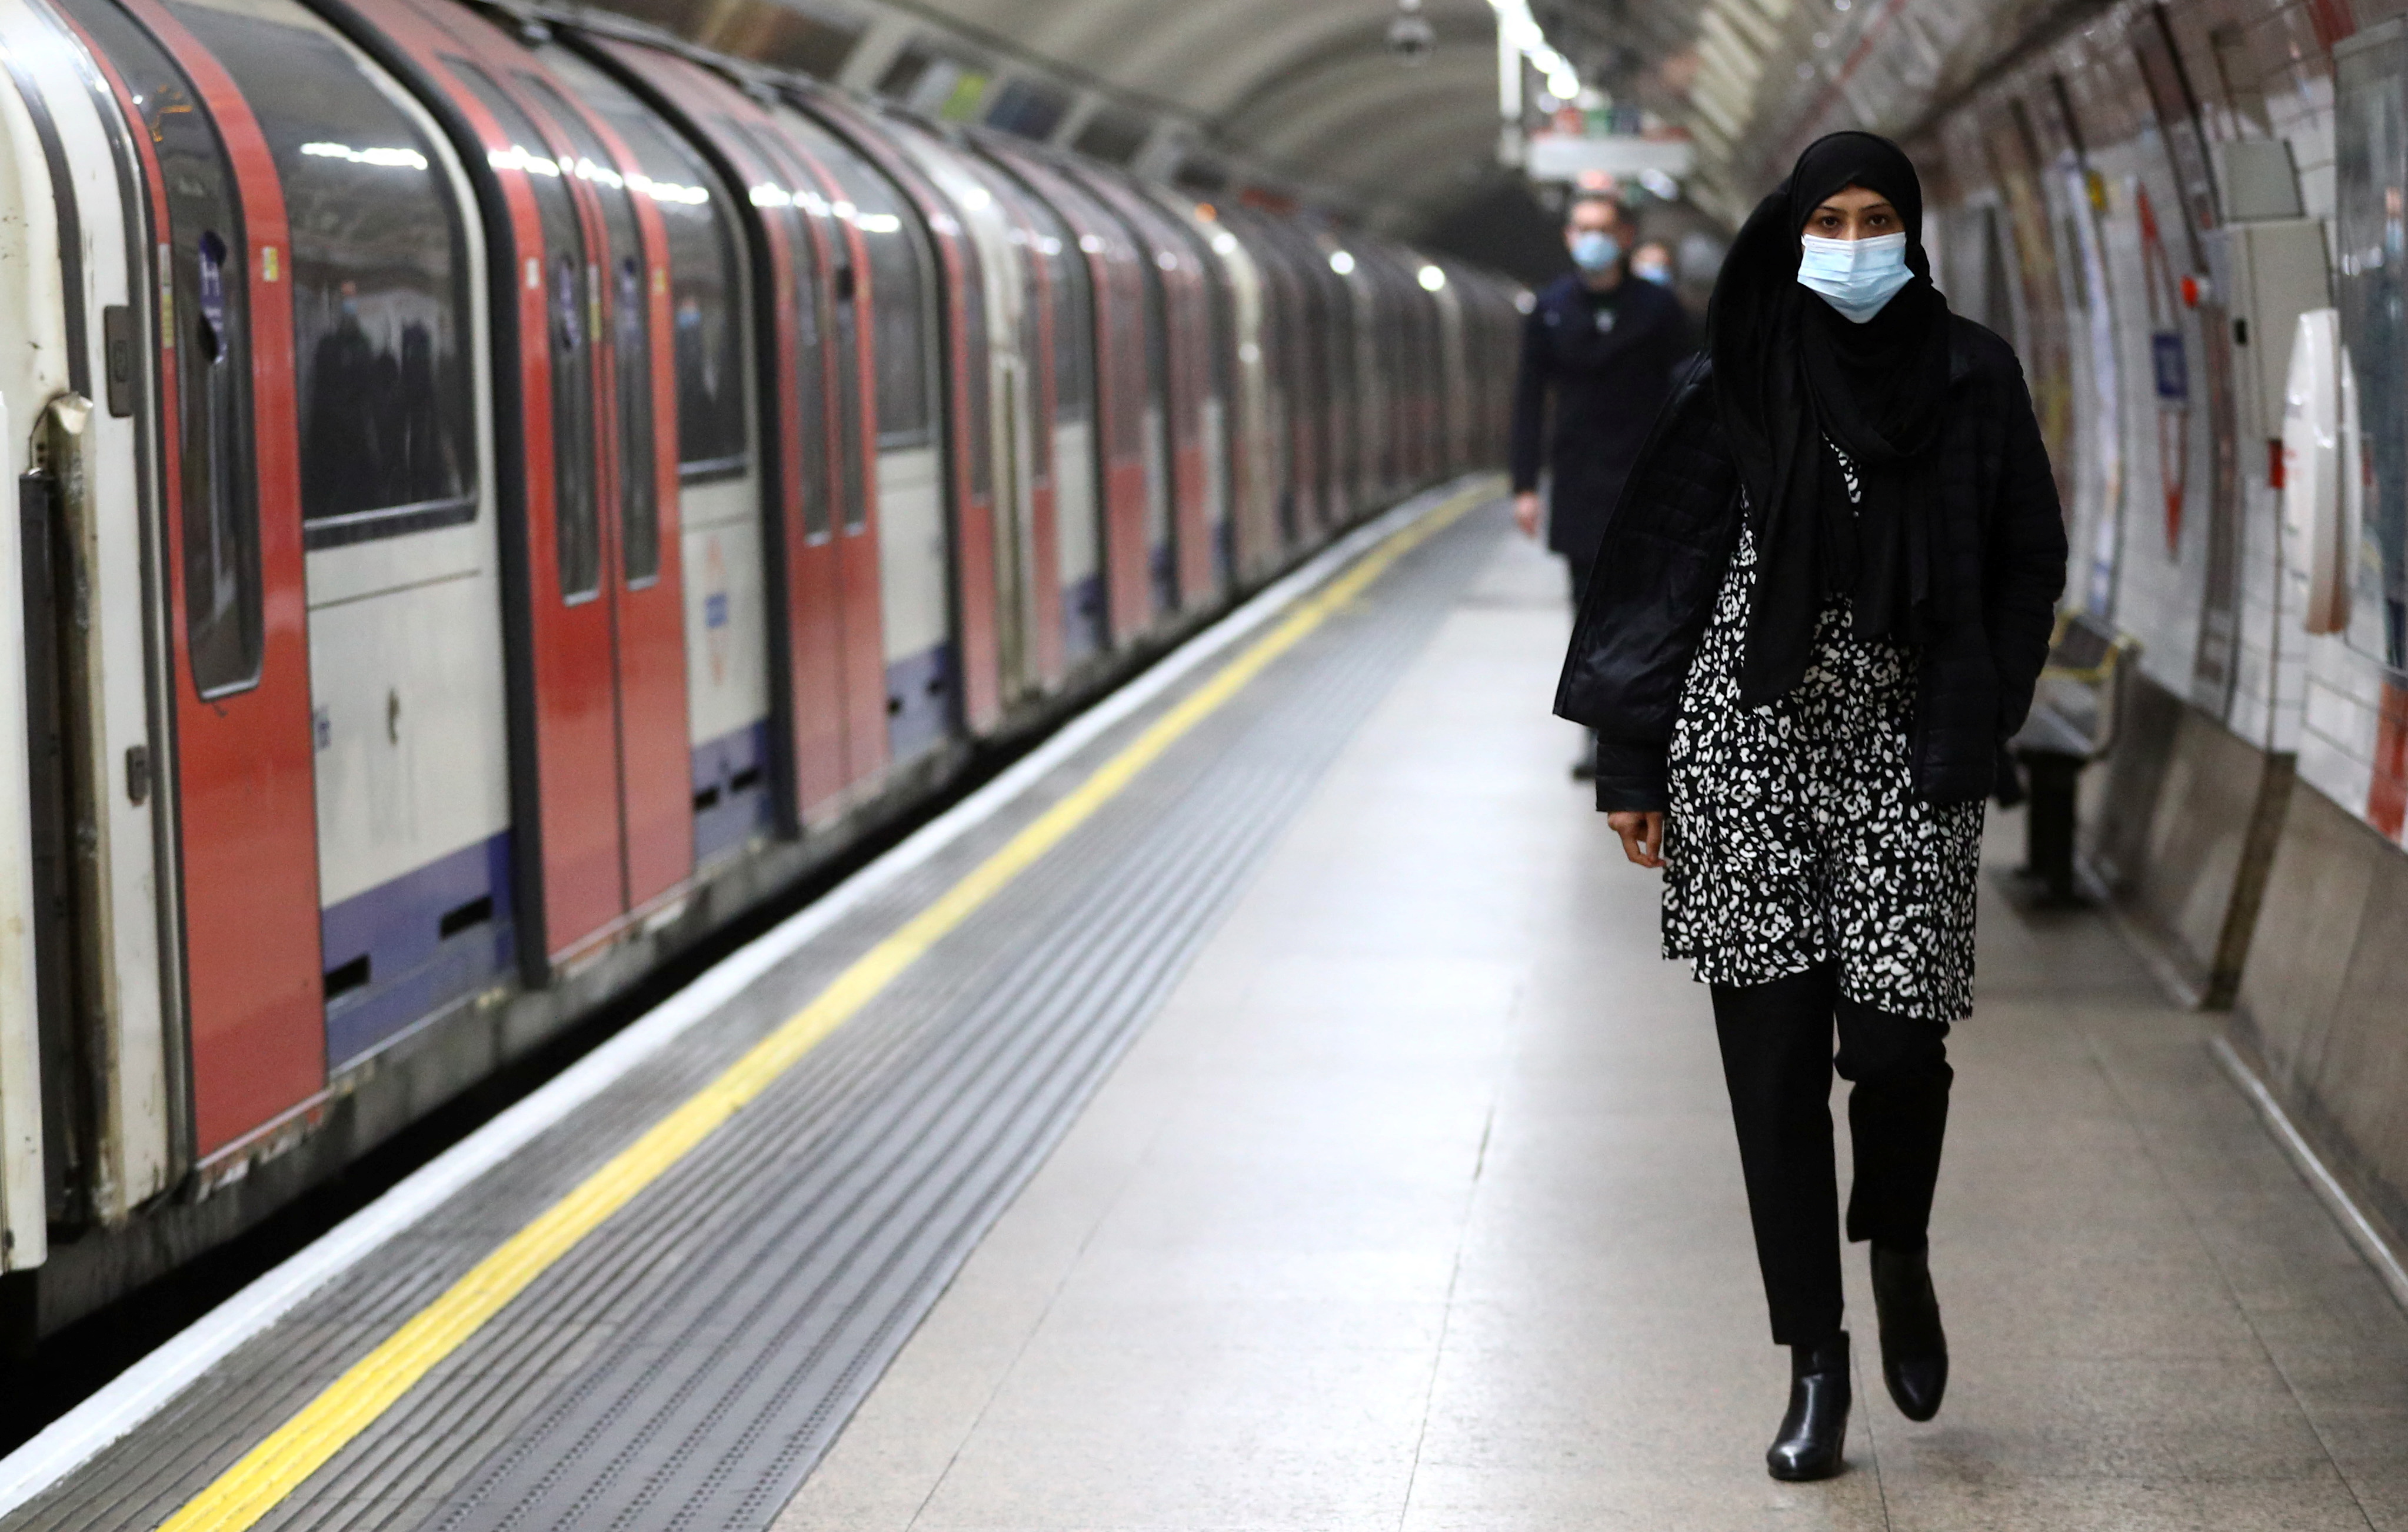 Pasajeros caminan por un andén del metro de Londres, mientras continúa la propagación de la enfermedad del coronavirus (COVID-19) en Londres, Gran Bretaña, el 21 de diciembre de 2021. REUTERS/Hannah McKay 
